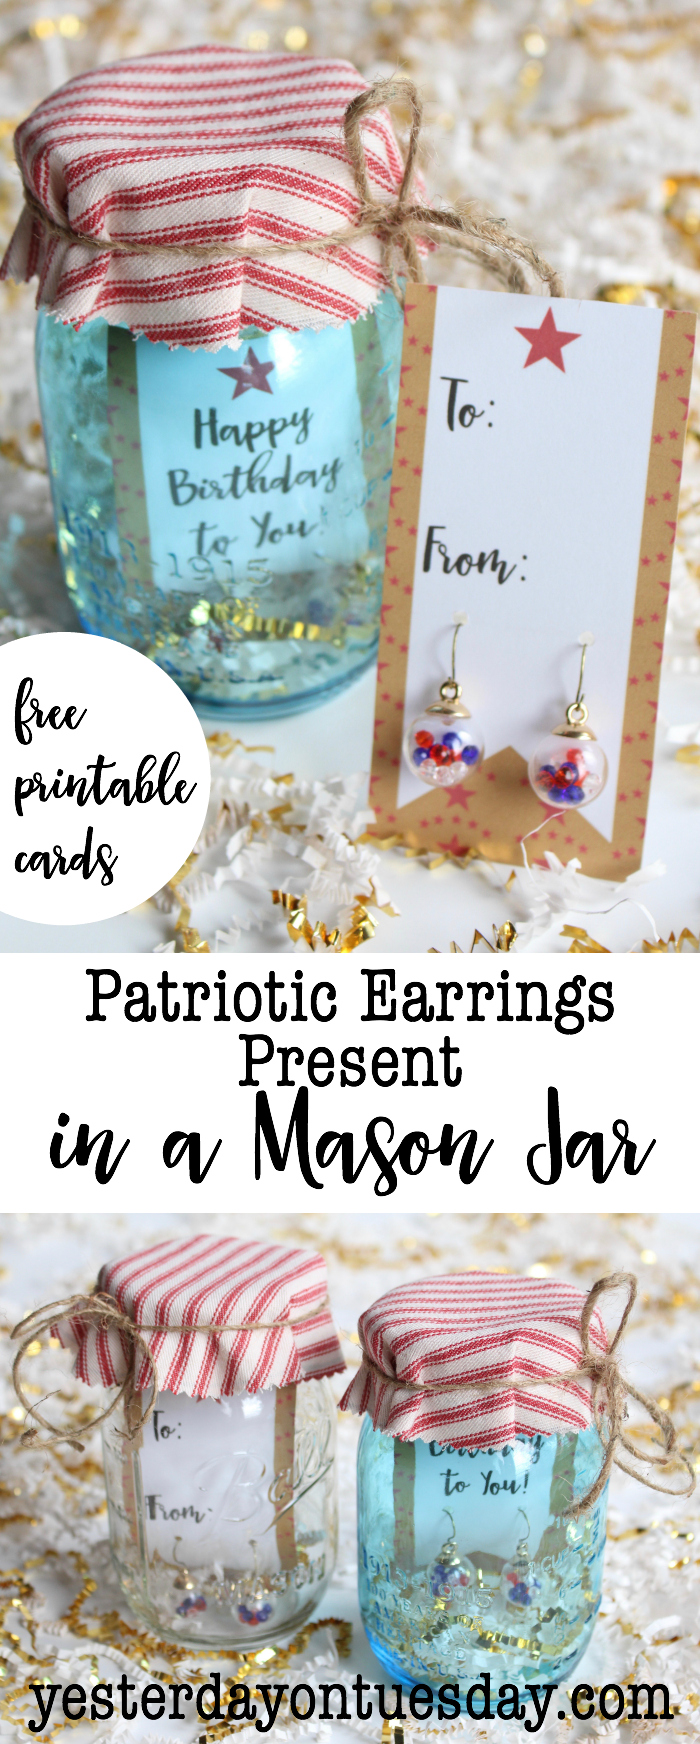 DIY Patriotic Earrings Present in a Mason Jar plus Printable Cards